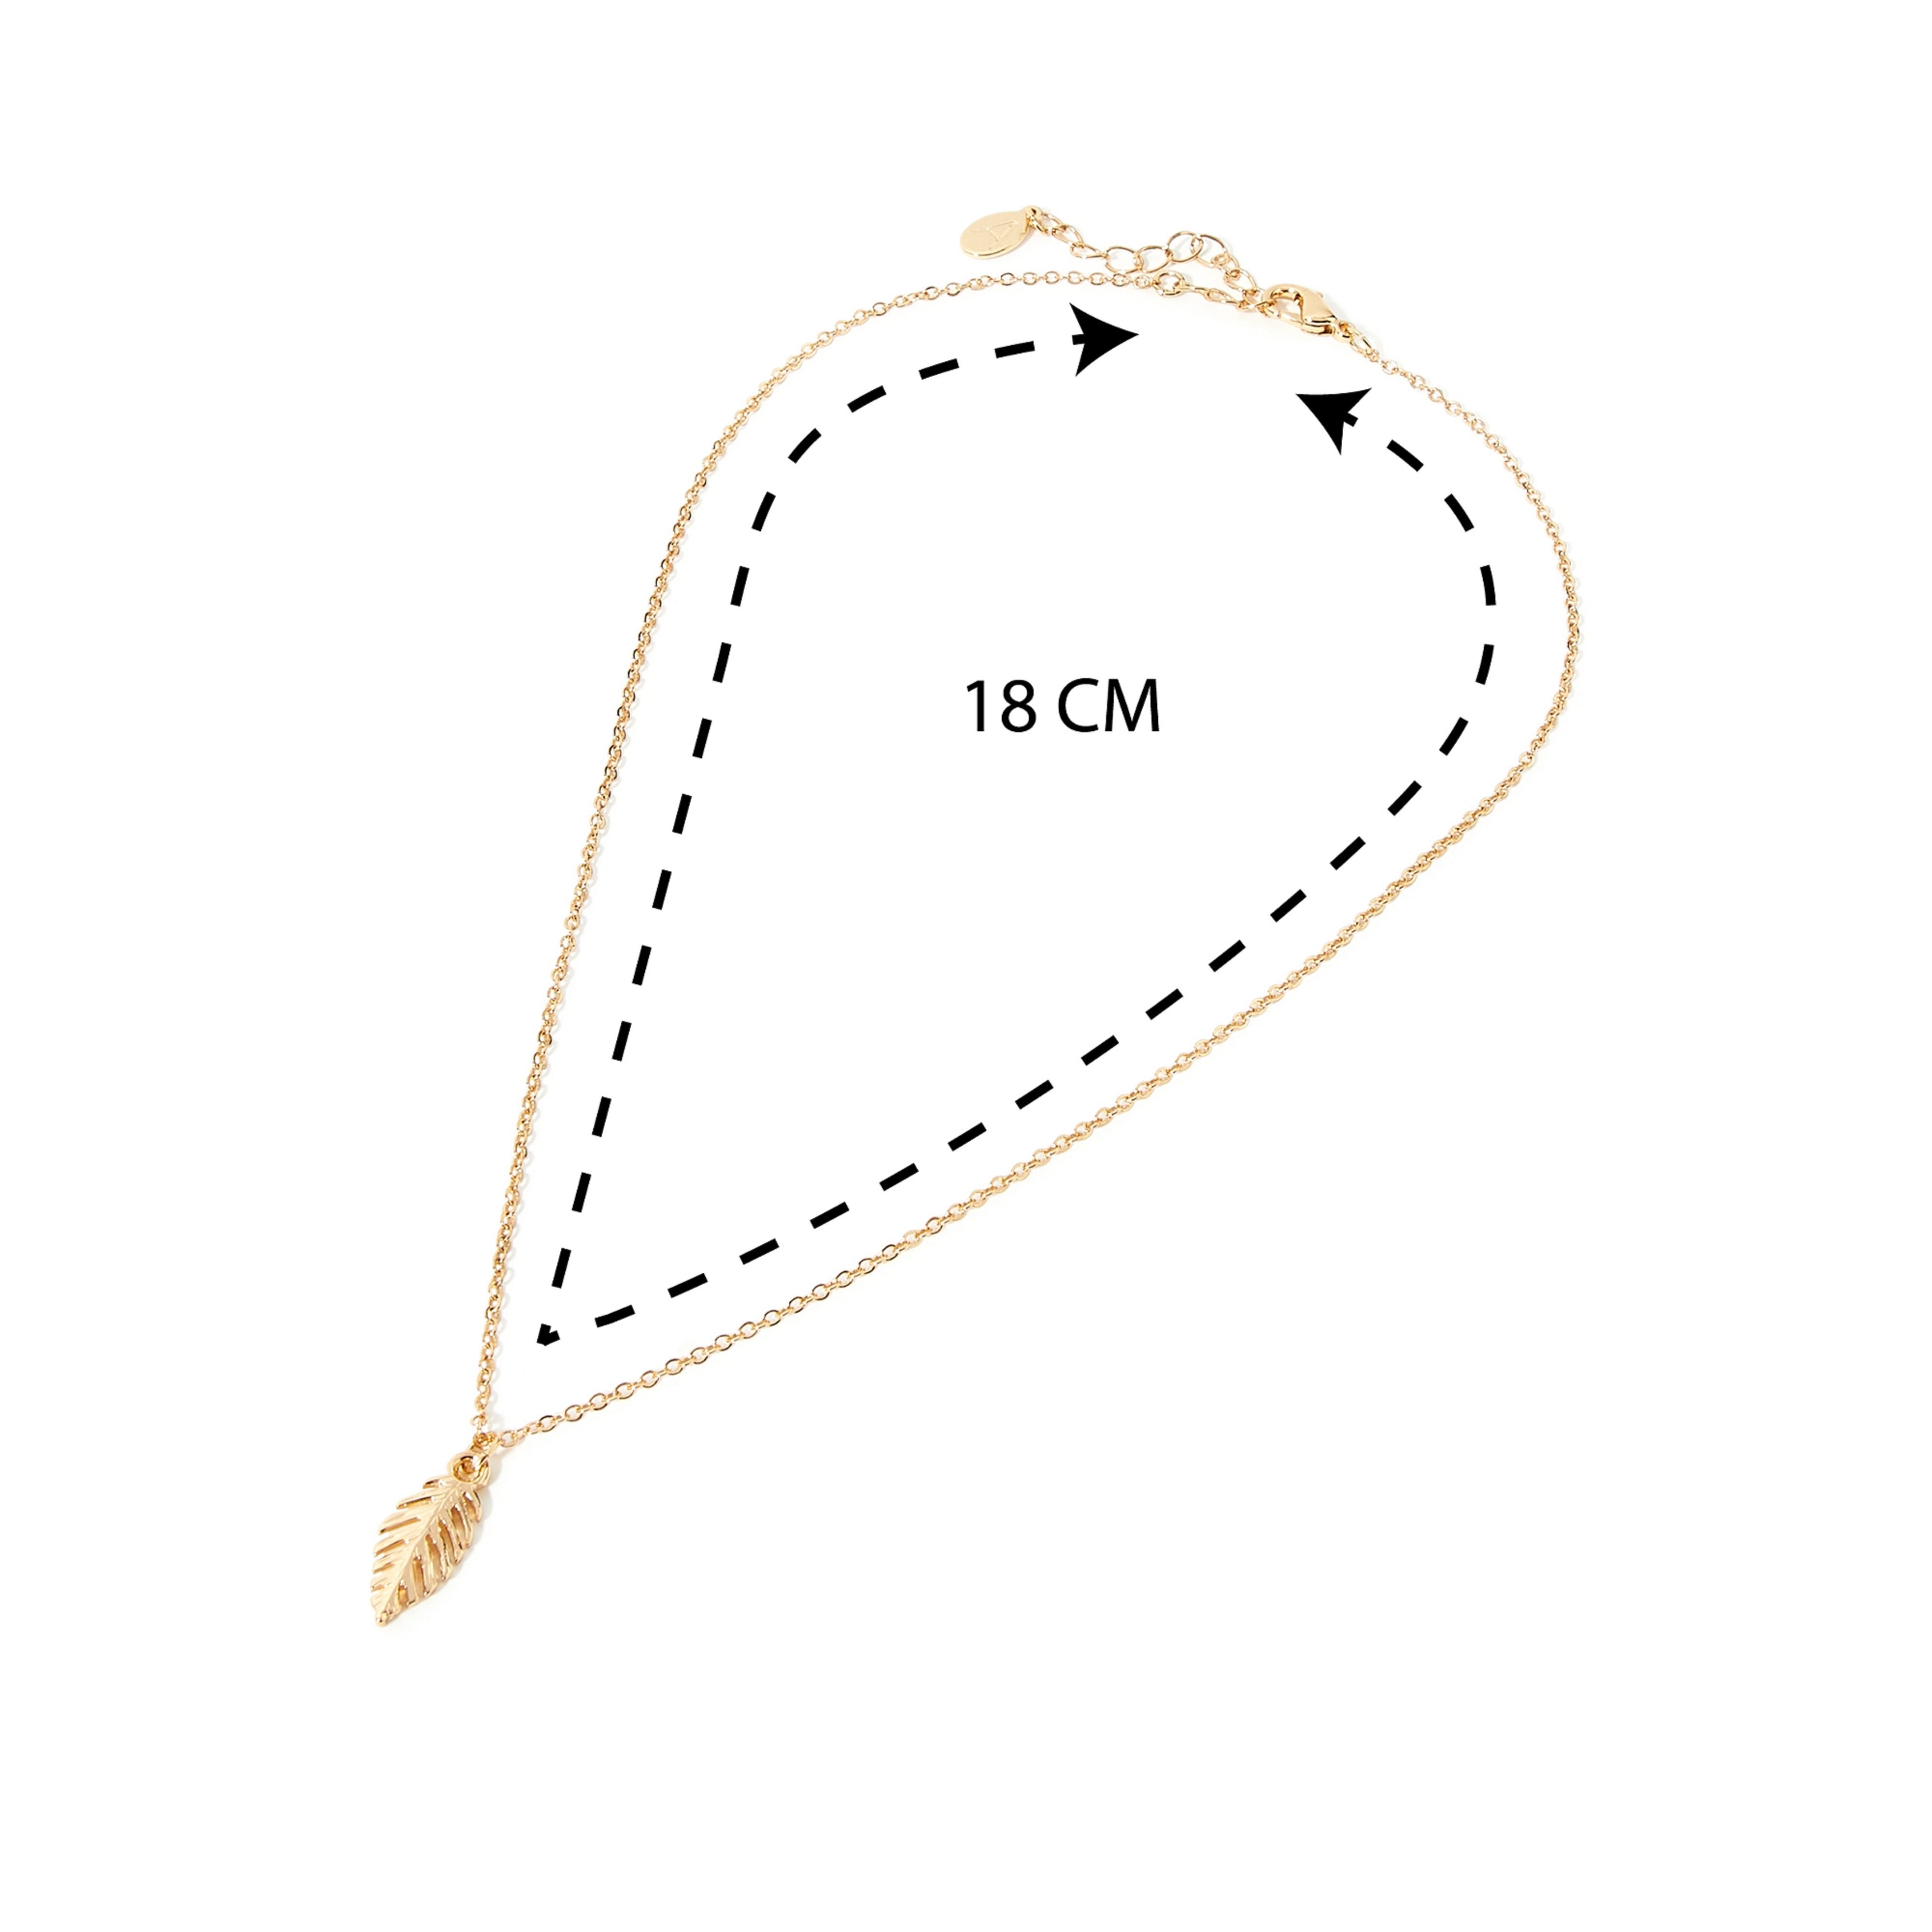 Accessorize London Women's Gold Leaf Pendant Necklace